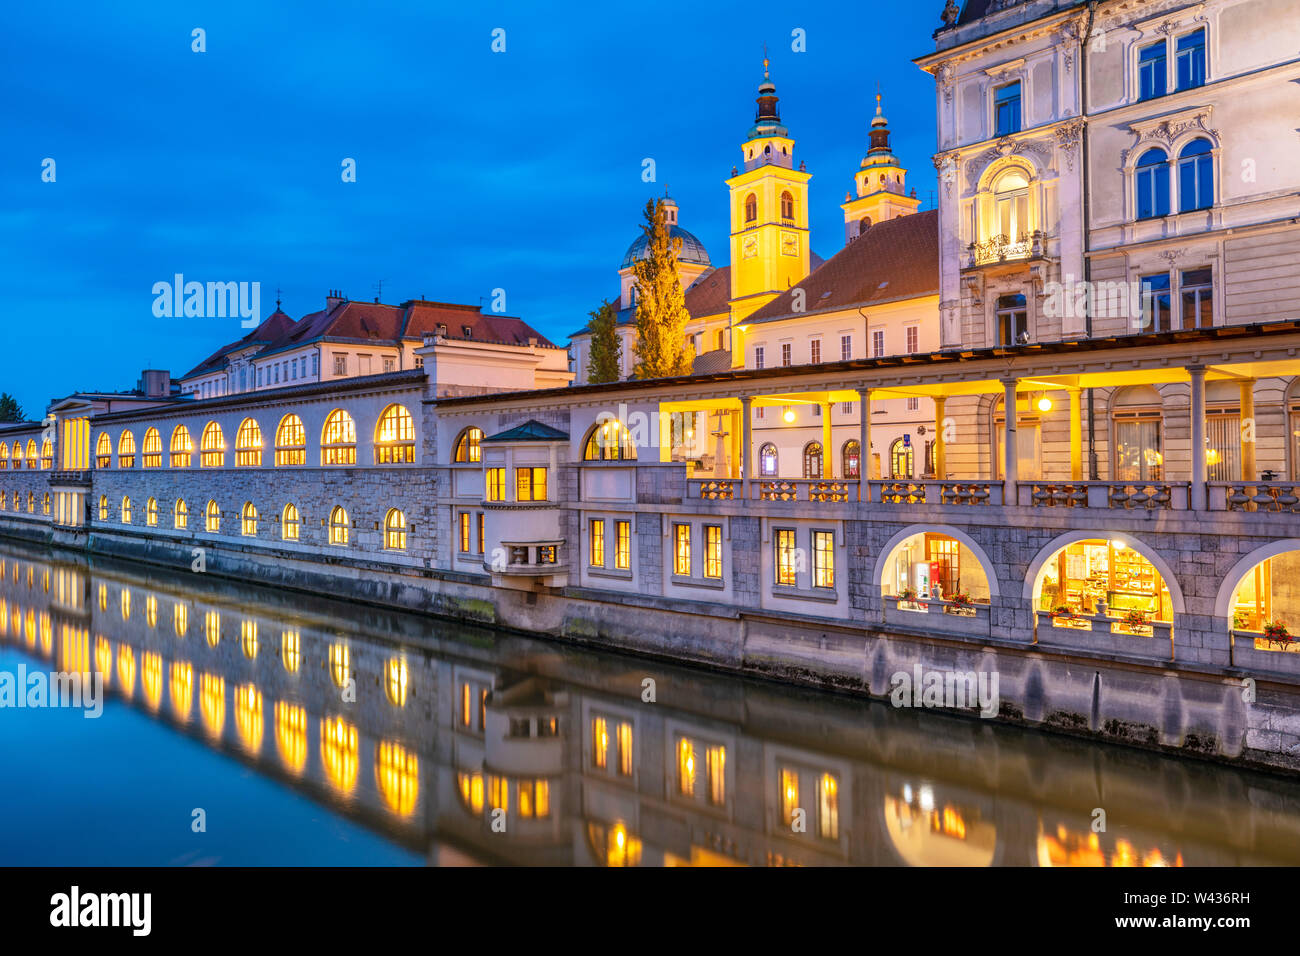 Notte riflessioni degli archi di Plečnik's portici della centrale di mercato coperto posto colonne nel fiume Ljubljanica Ljubljana Slovenia EU Europe Foto Stock